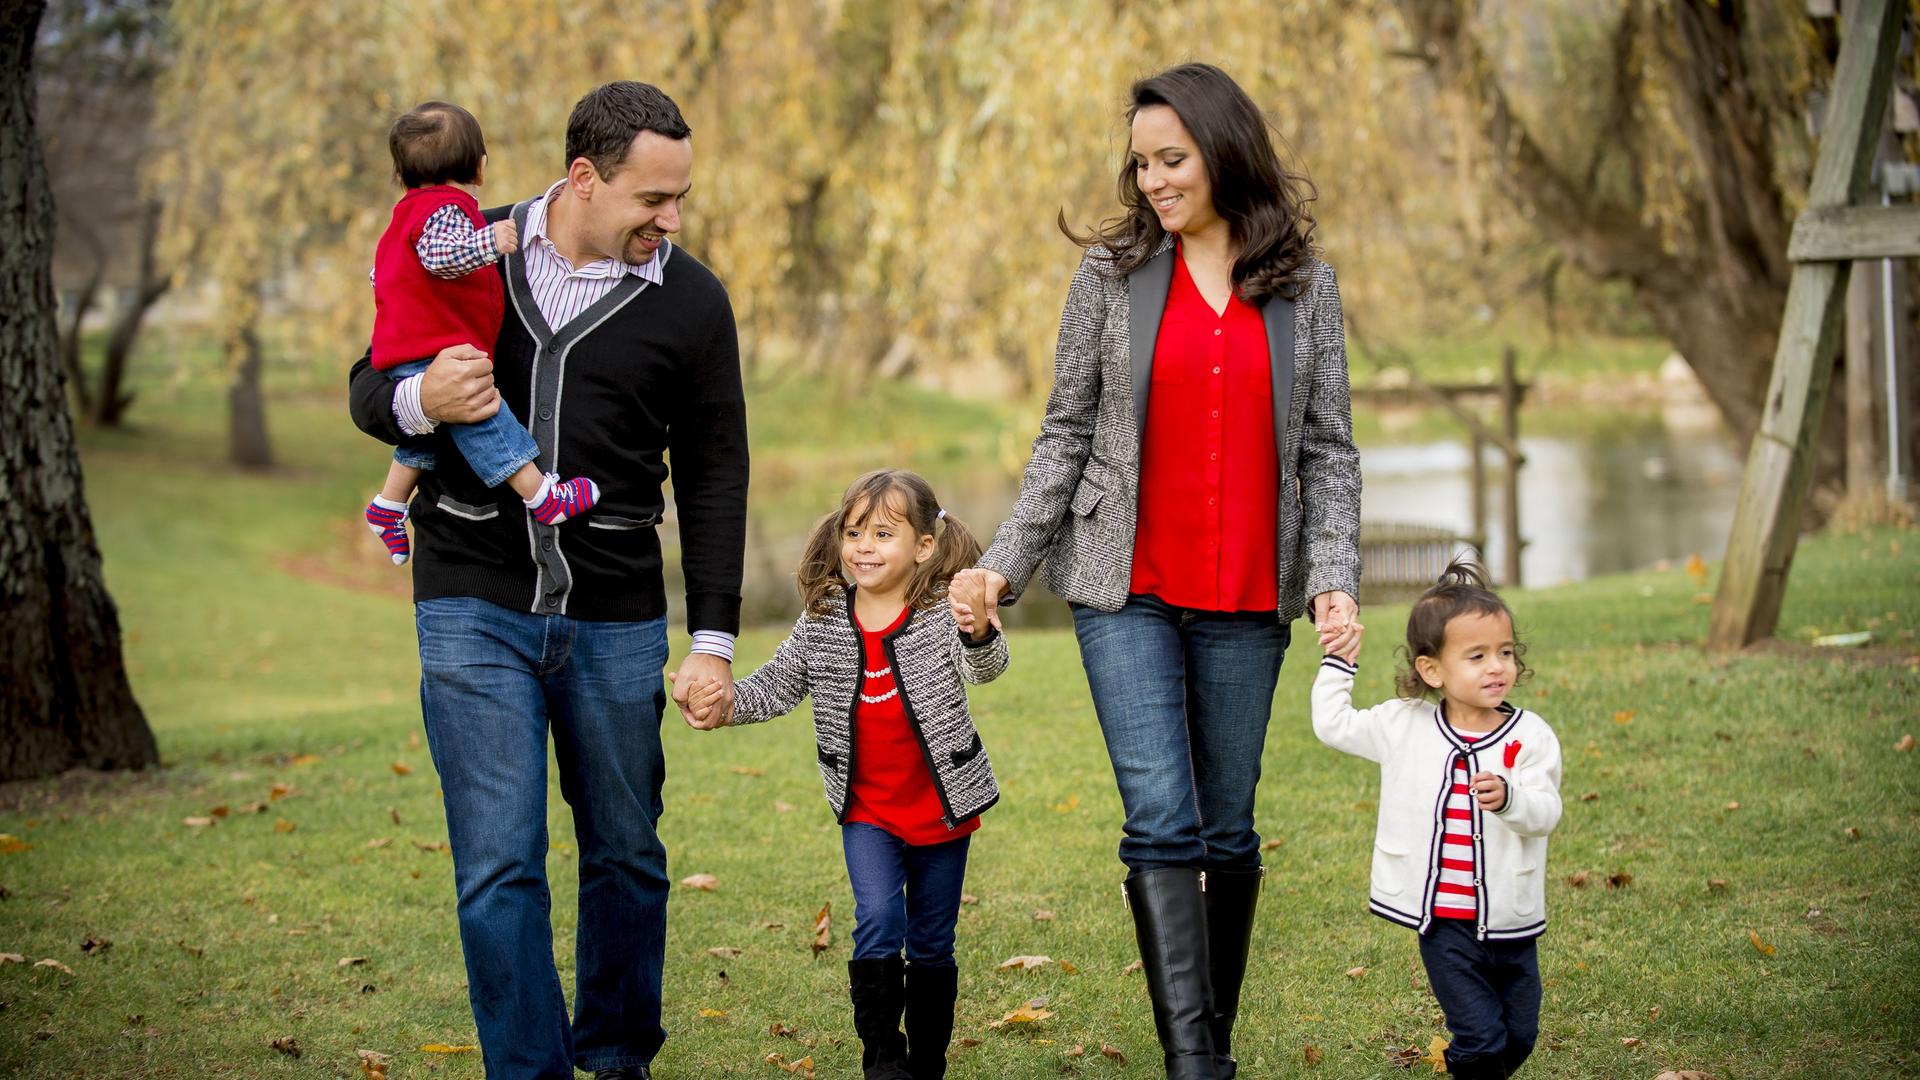 Eine Familie geht in einem Park spazieren, Vater, Mutter und drei Kinder sind lächelnd und händehaltend unterwegs.